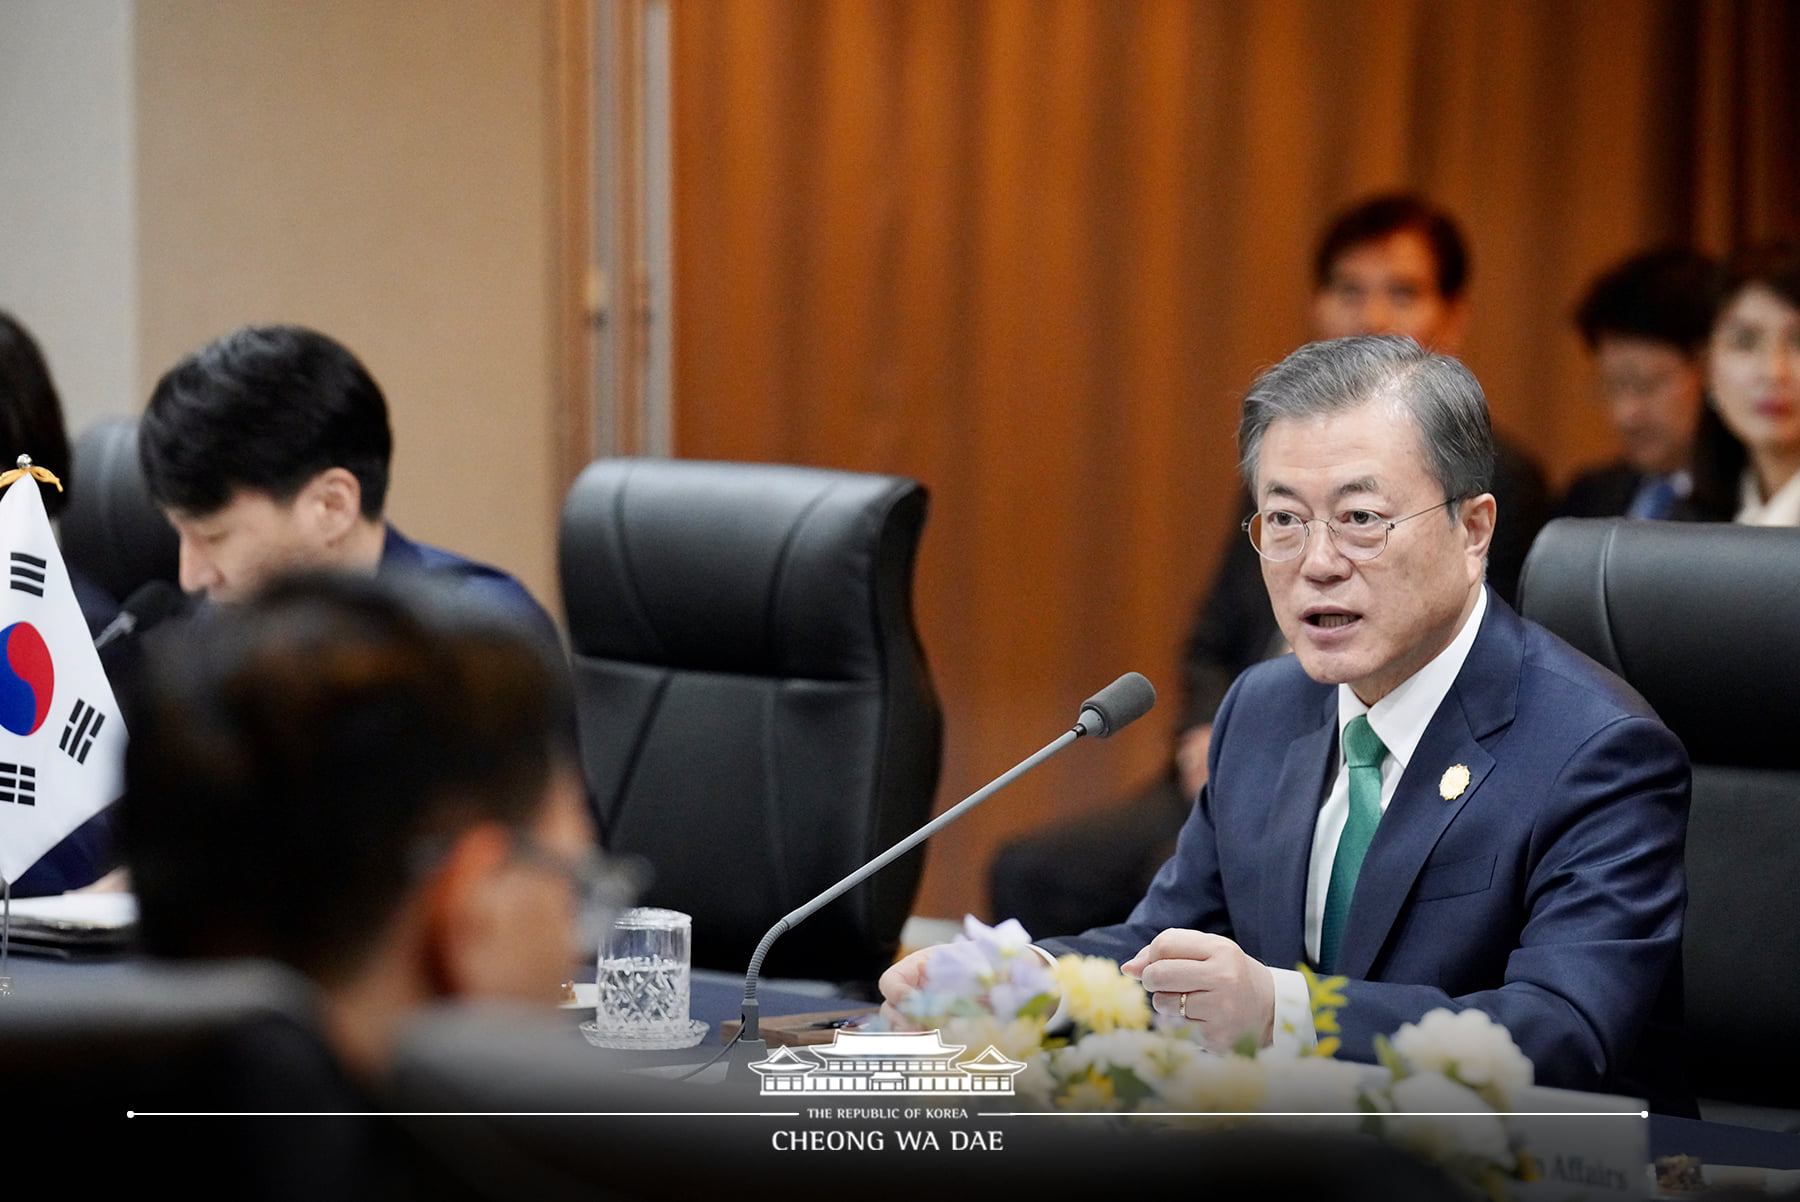 青瓦台國安會議決 續推韓中日三國合作 | 芋傳媒 TaroNews